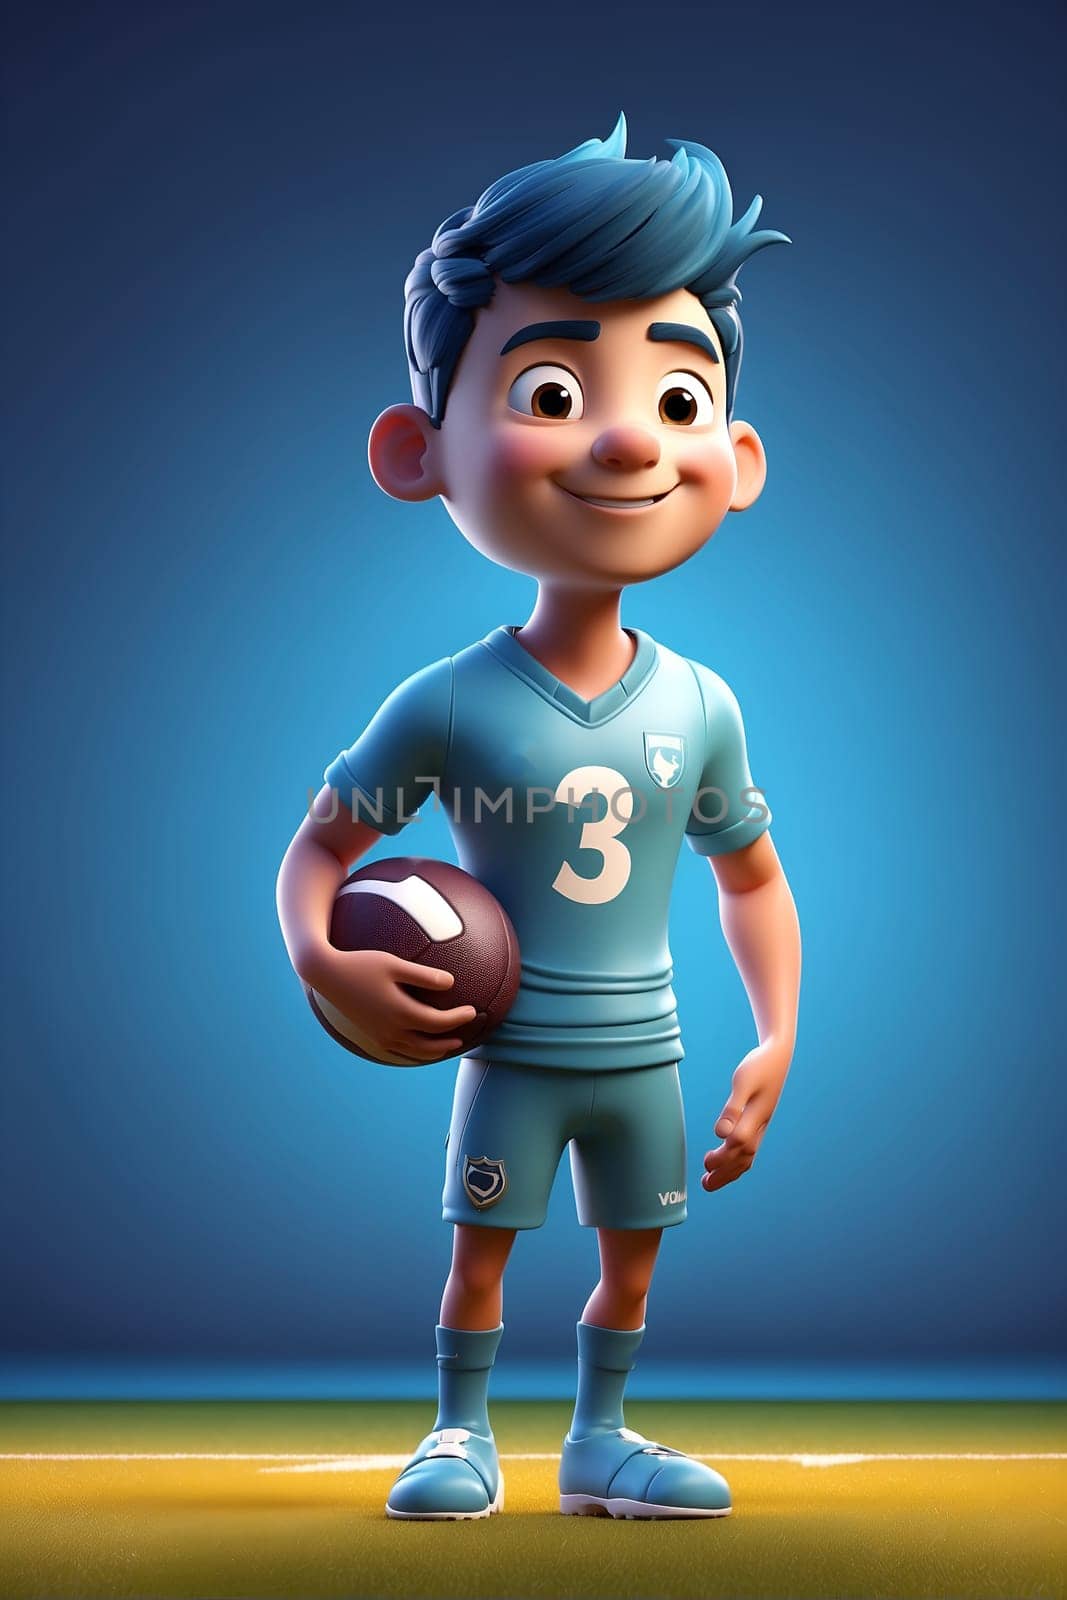 Cartoon Character Holding Football on Field. Generative AI. by artofphoto